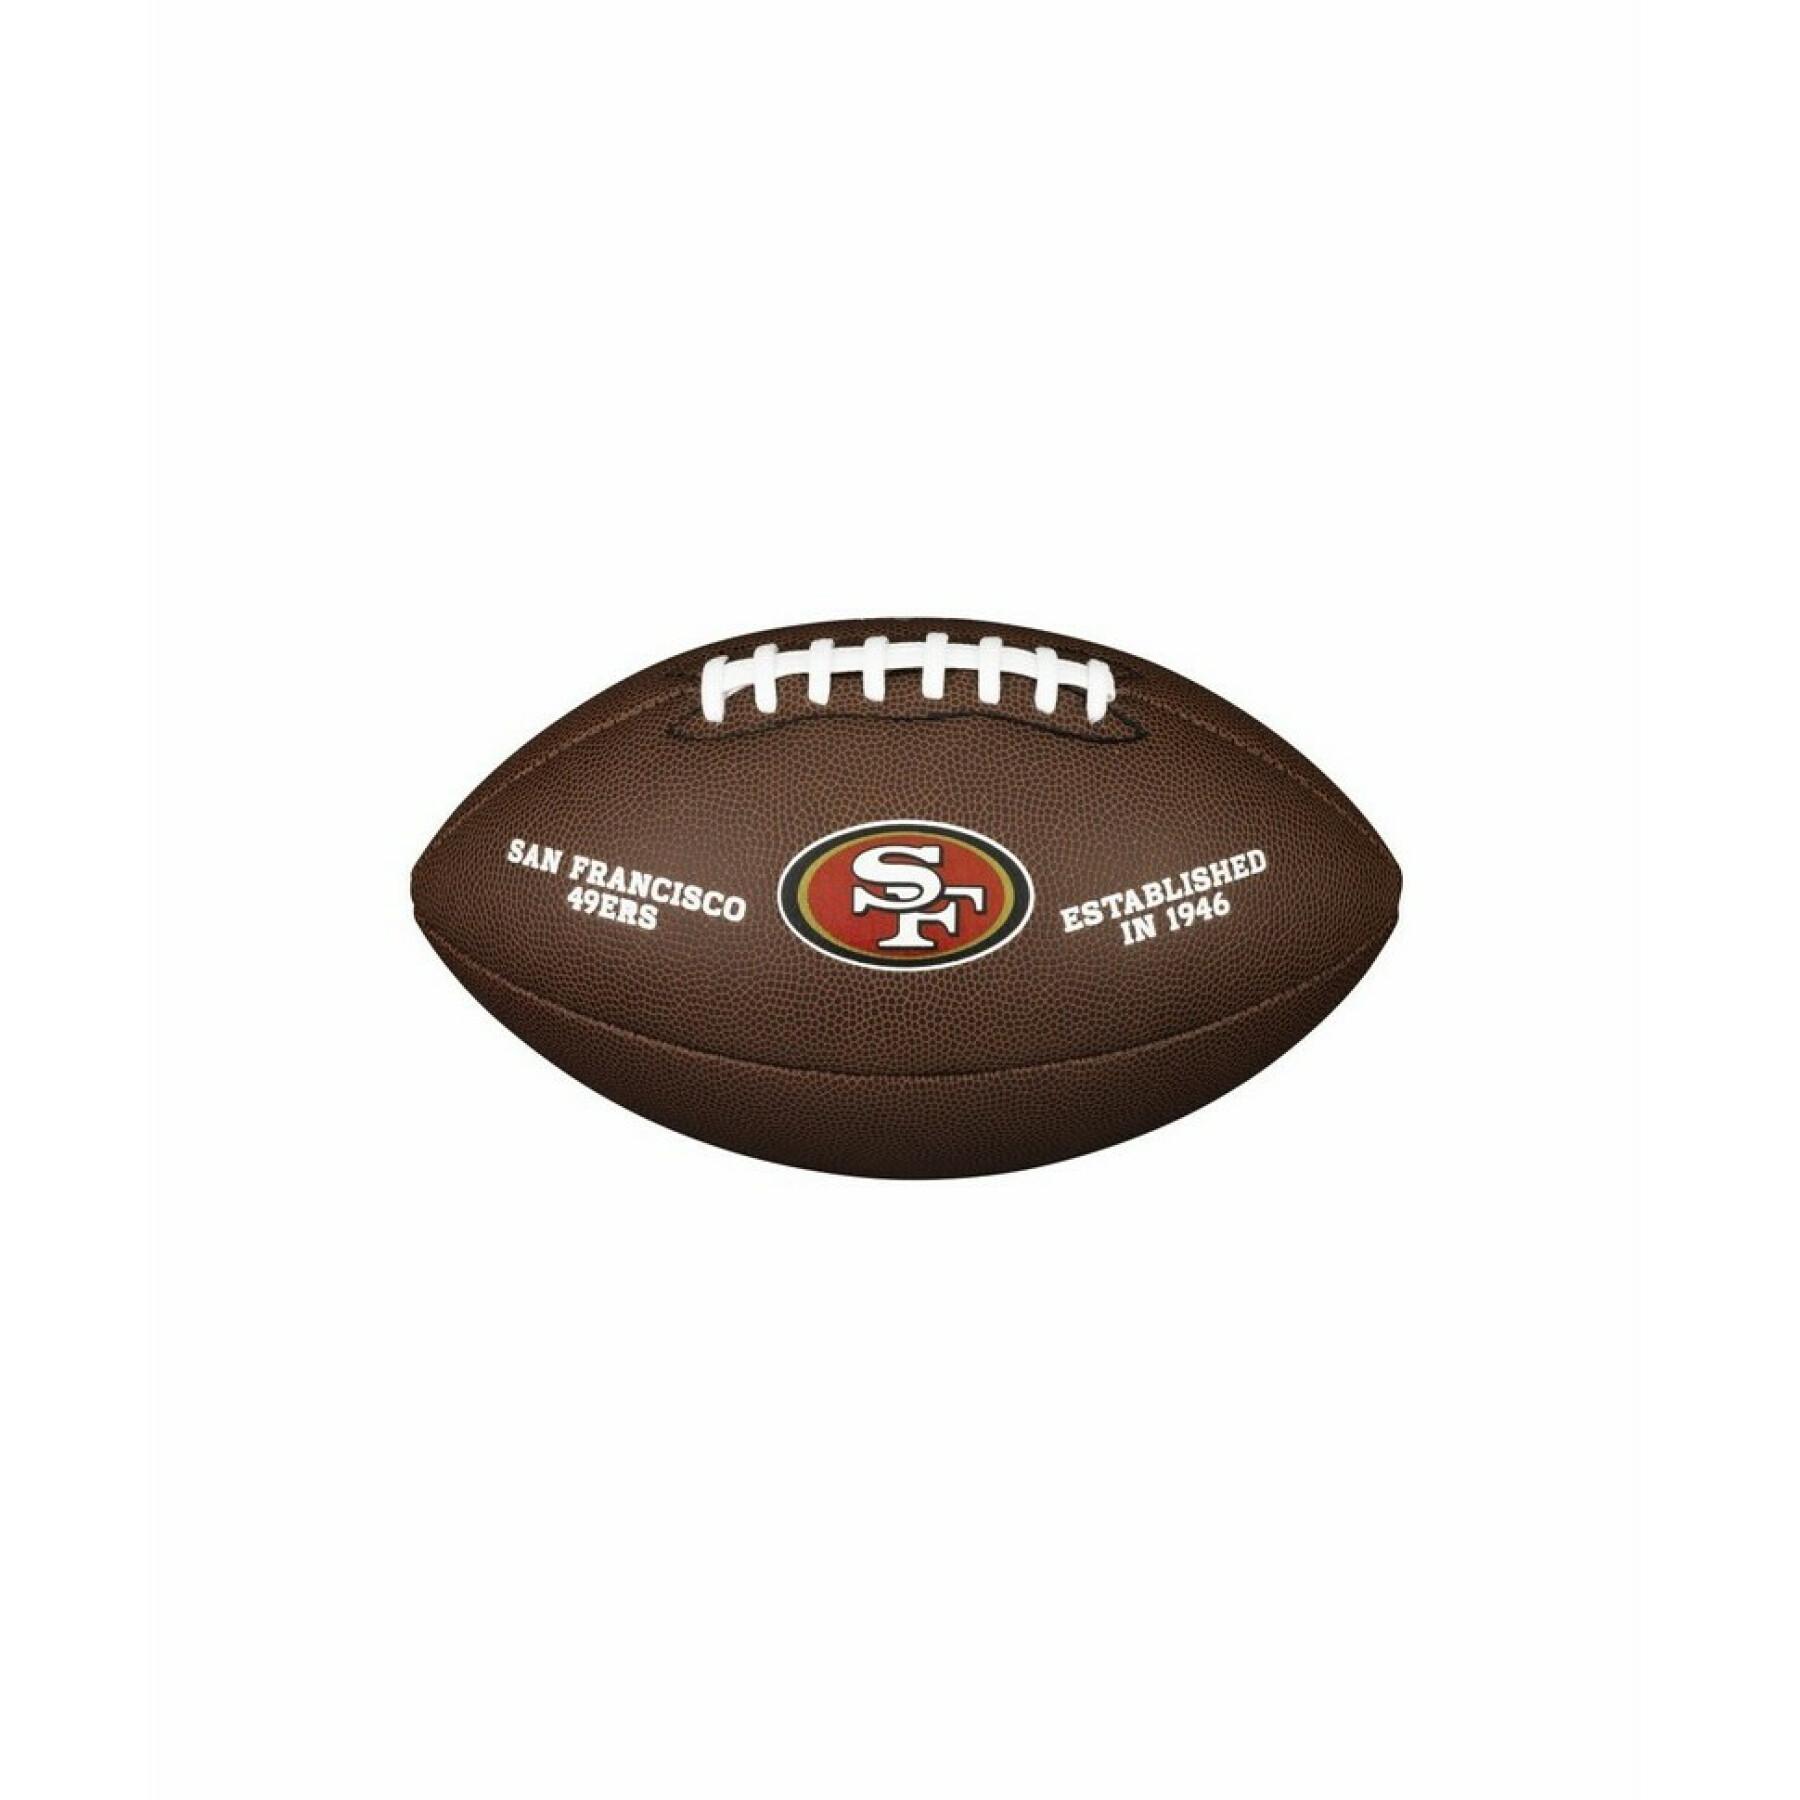 Ballon Wilson 49ers NFL Licensed